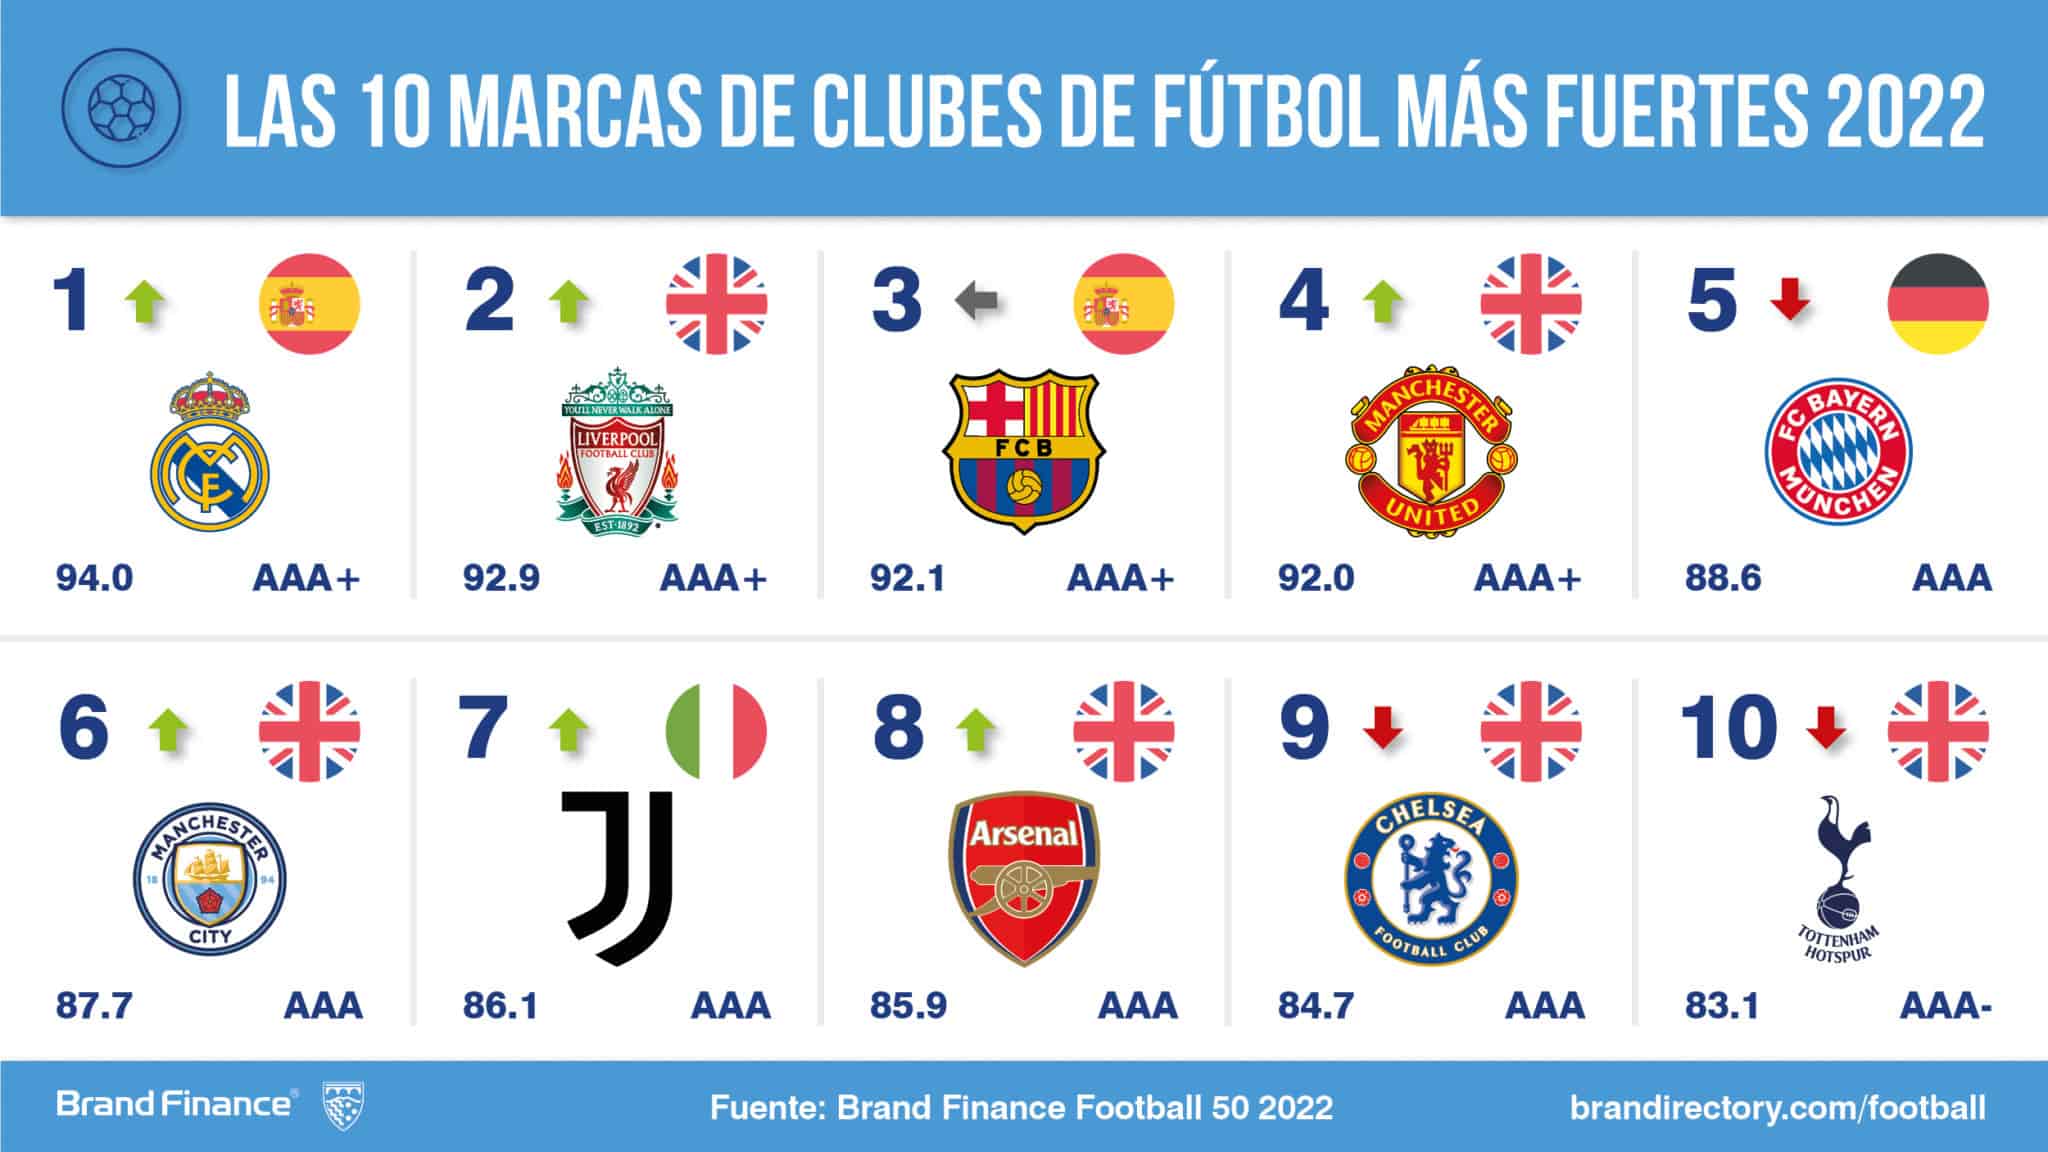 Las 10 marcas de clubes de fútbol más fuertes